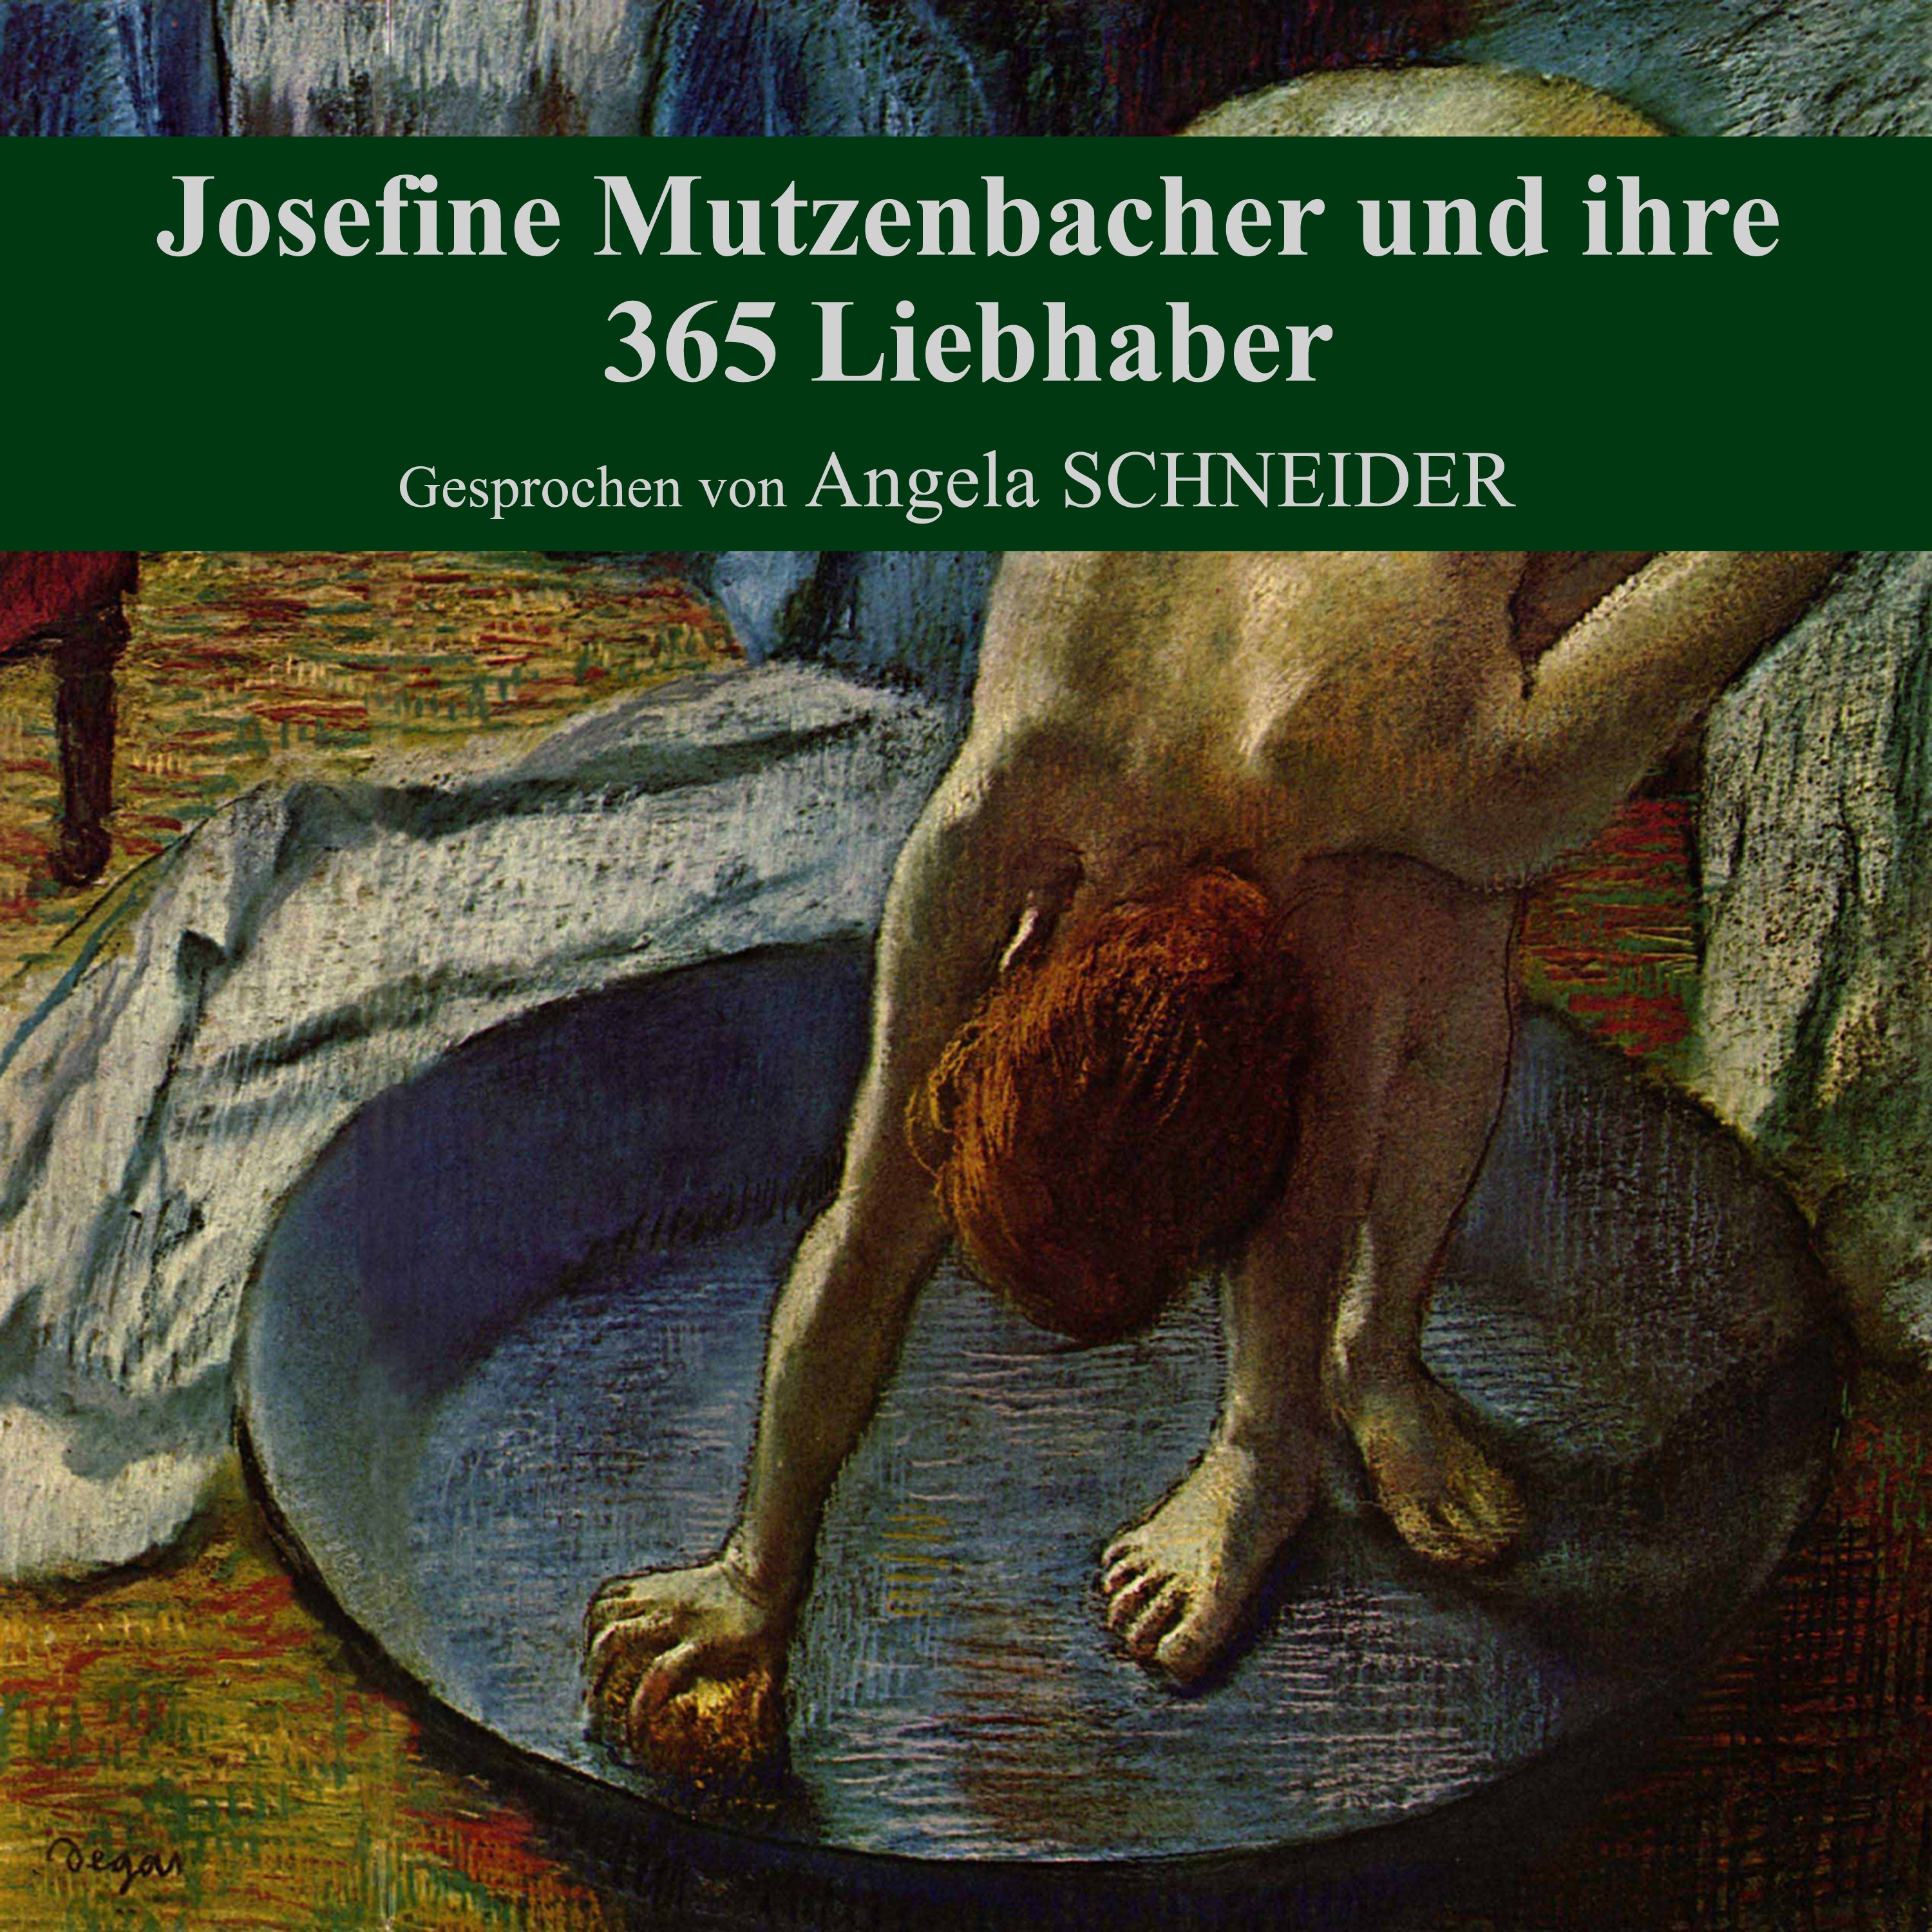 Josefine Mutzenbacher und ihre 365 Liebhaber